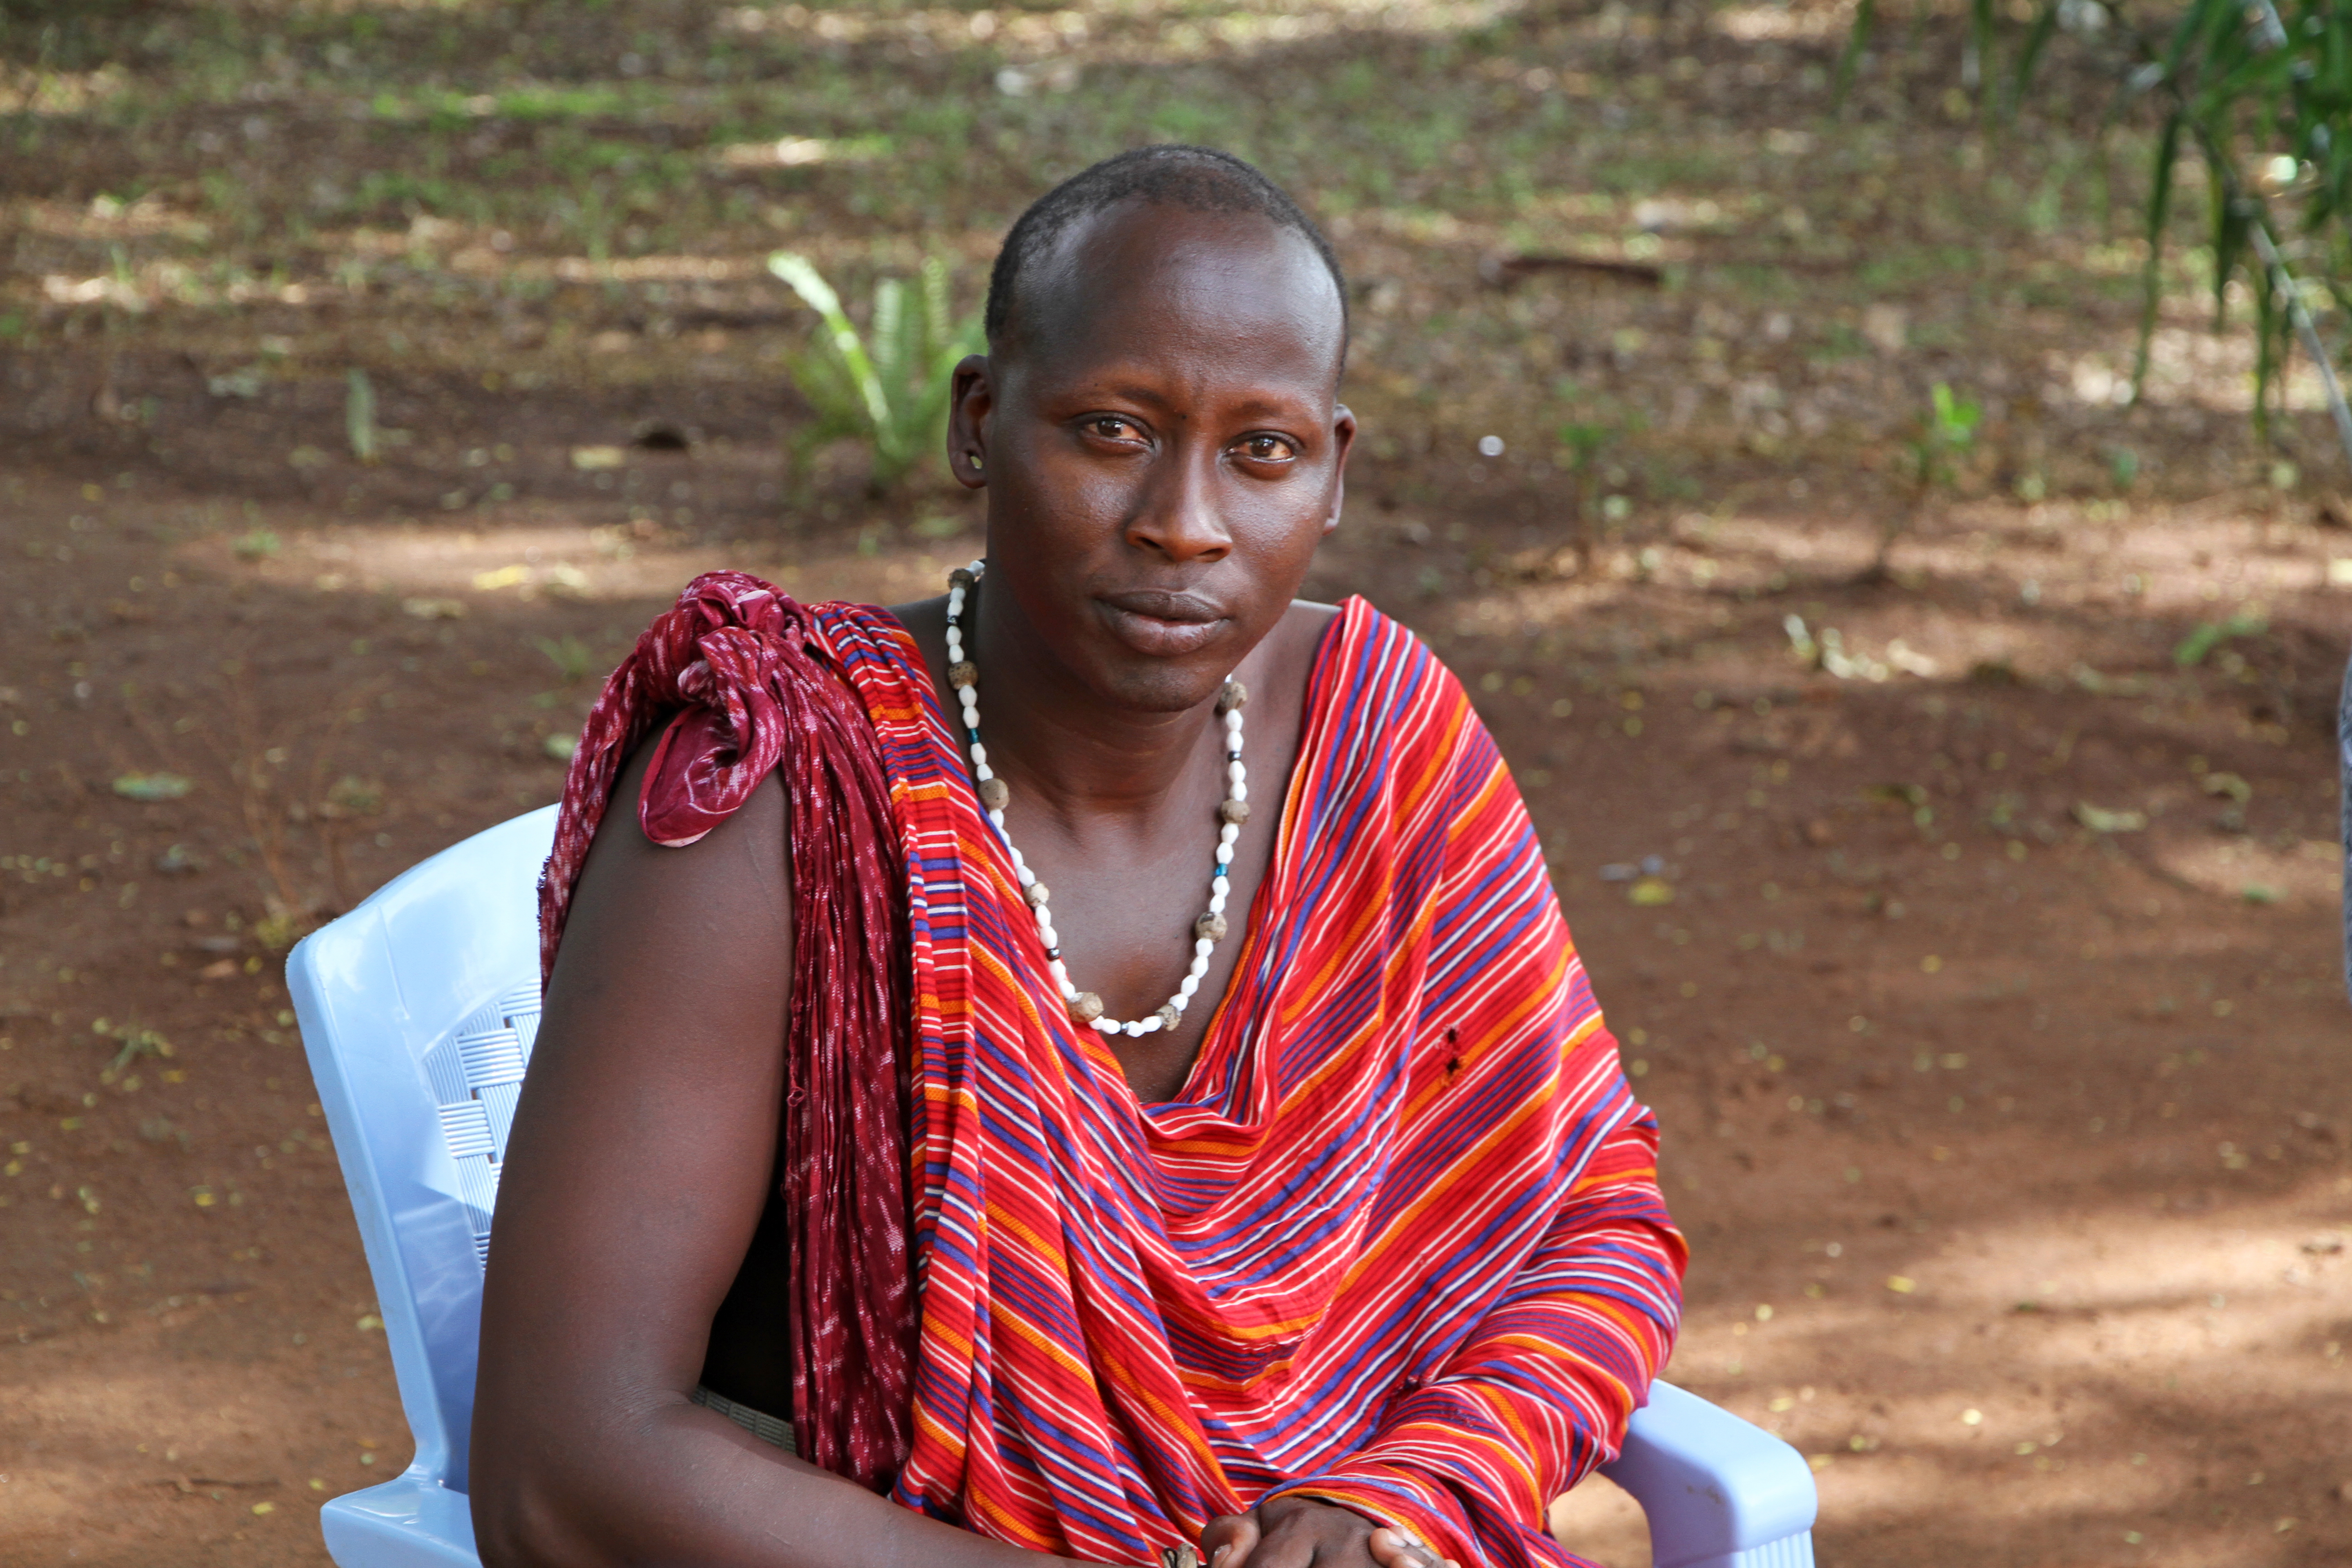 Massajledaren Lestino Kilindi kämpar mot könsstympning i Morogoro